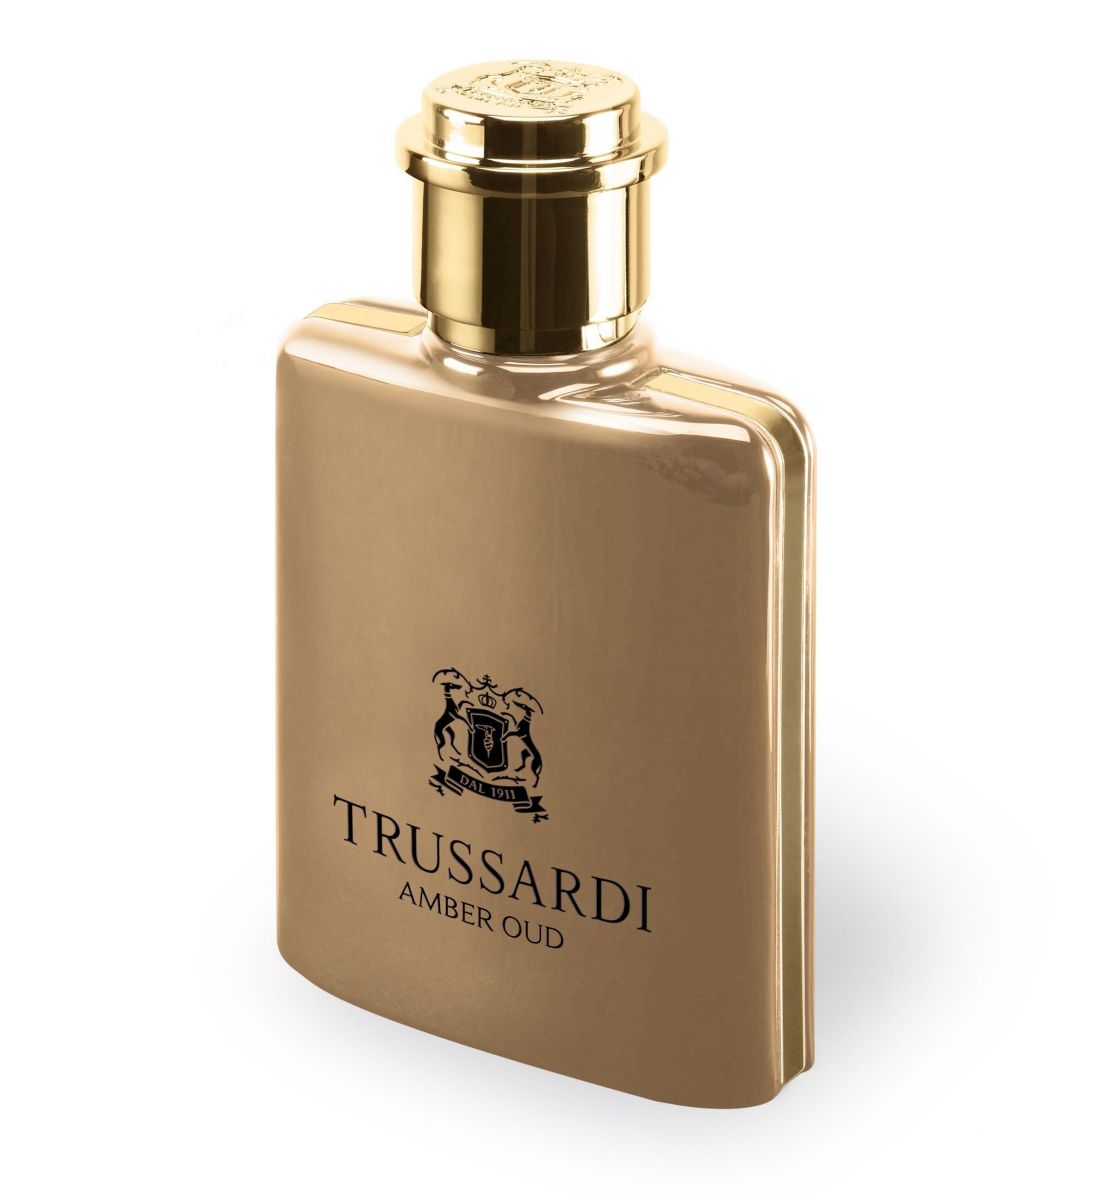 Trussardi представил новый аромат для мужчин (ФОТО)